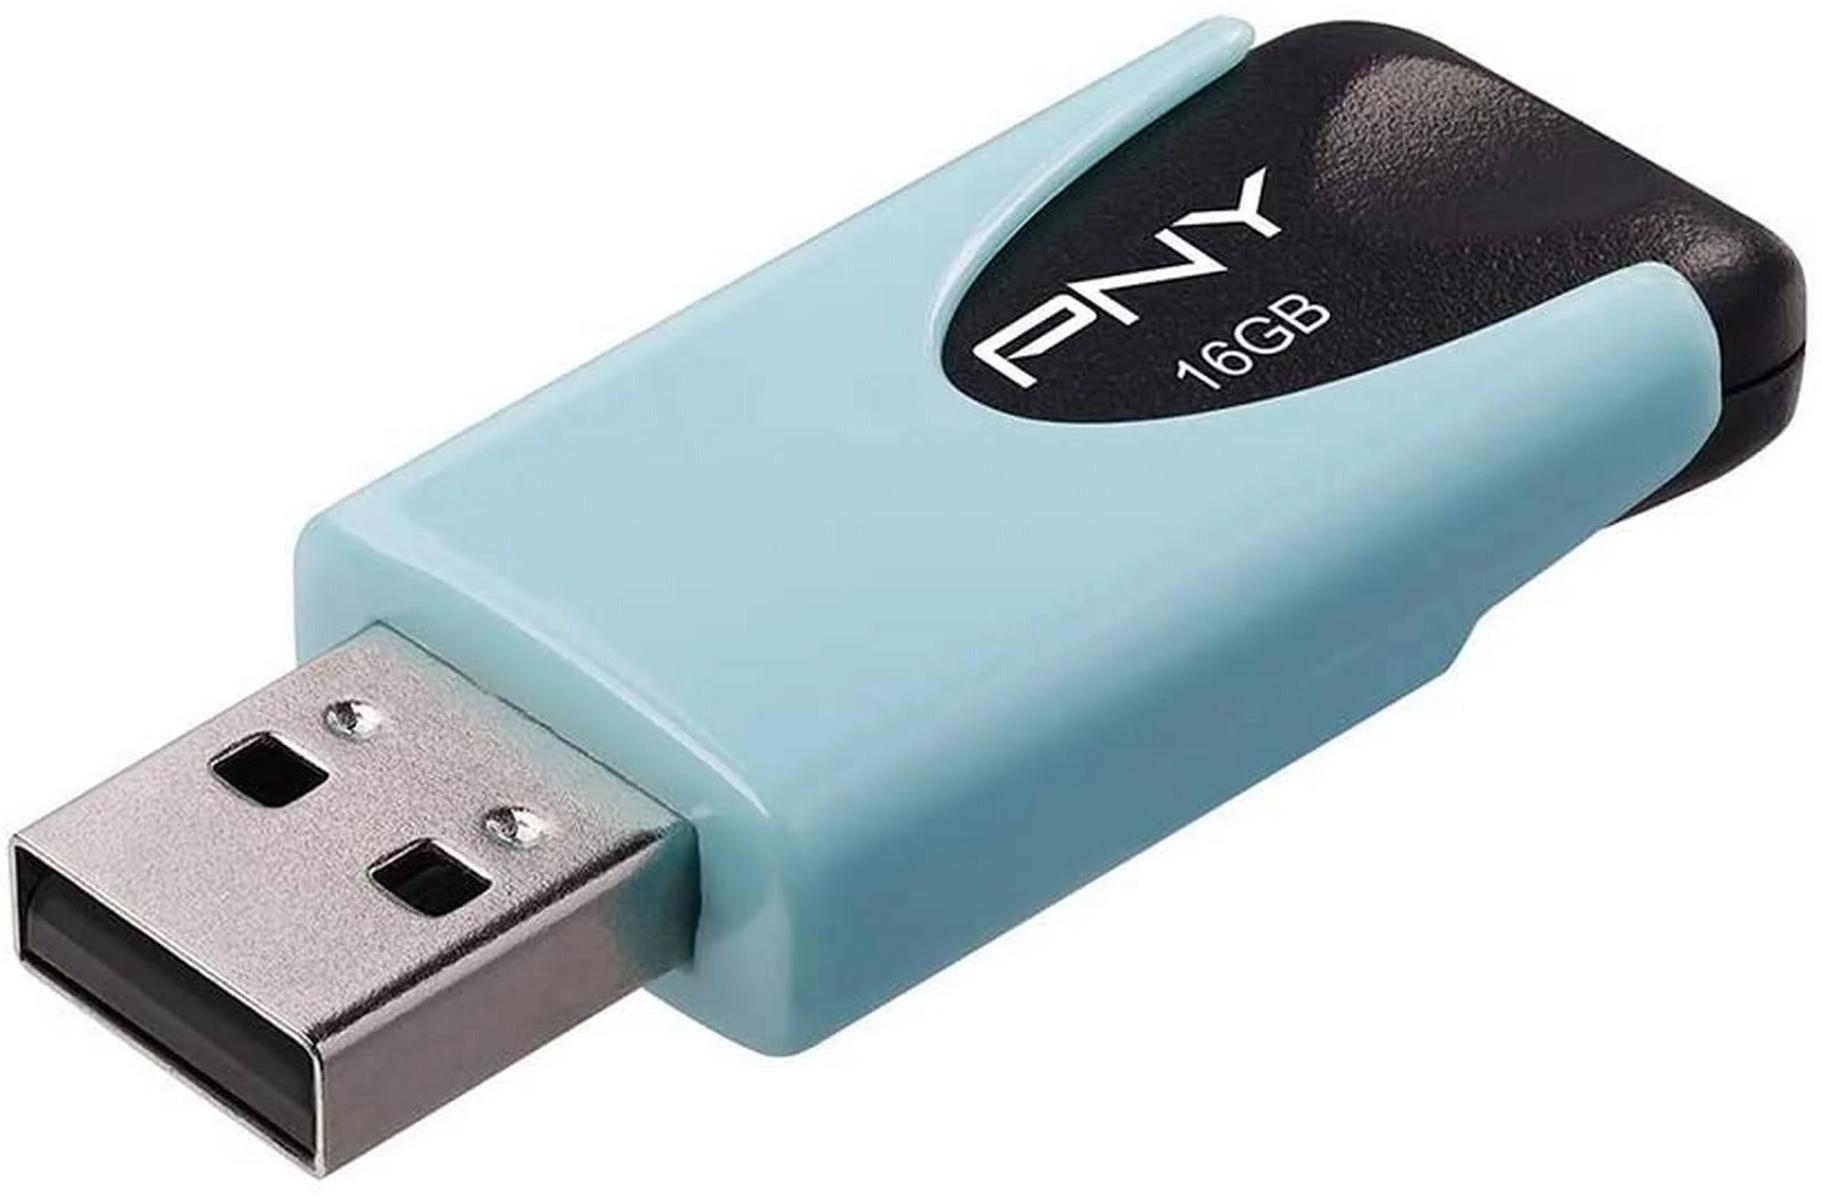 (blau, Attaché PNY Stick 16 4 USB GB)